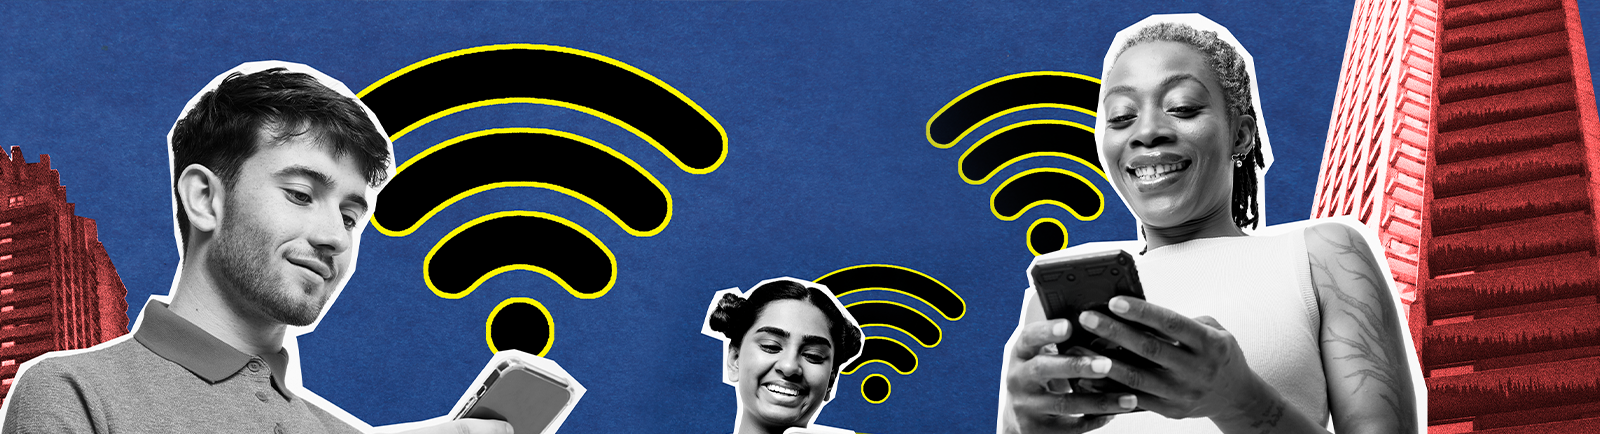 Wi-Fi 6: tudo sobre essa recente tecnologia de conexão sem fio